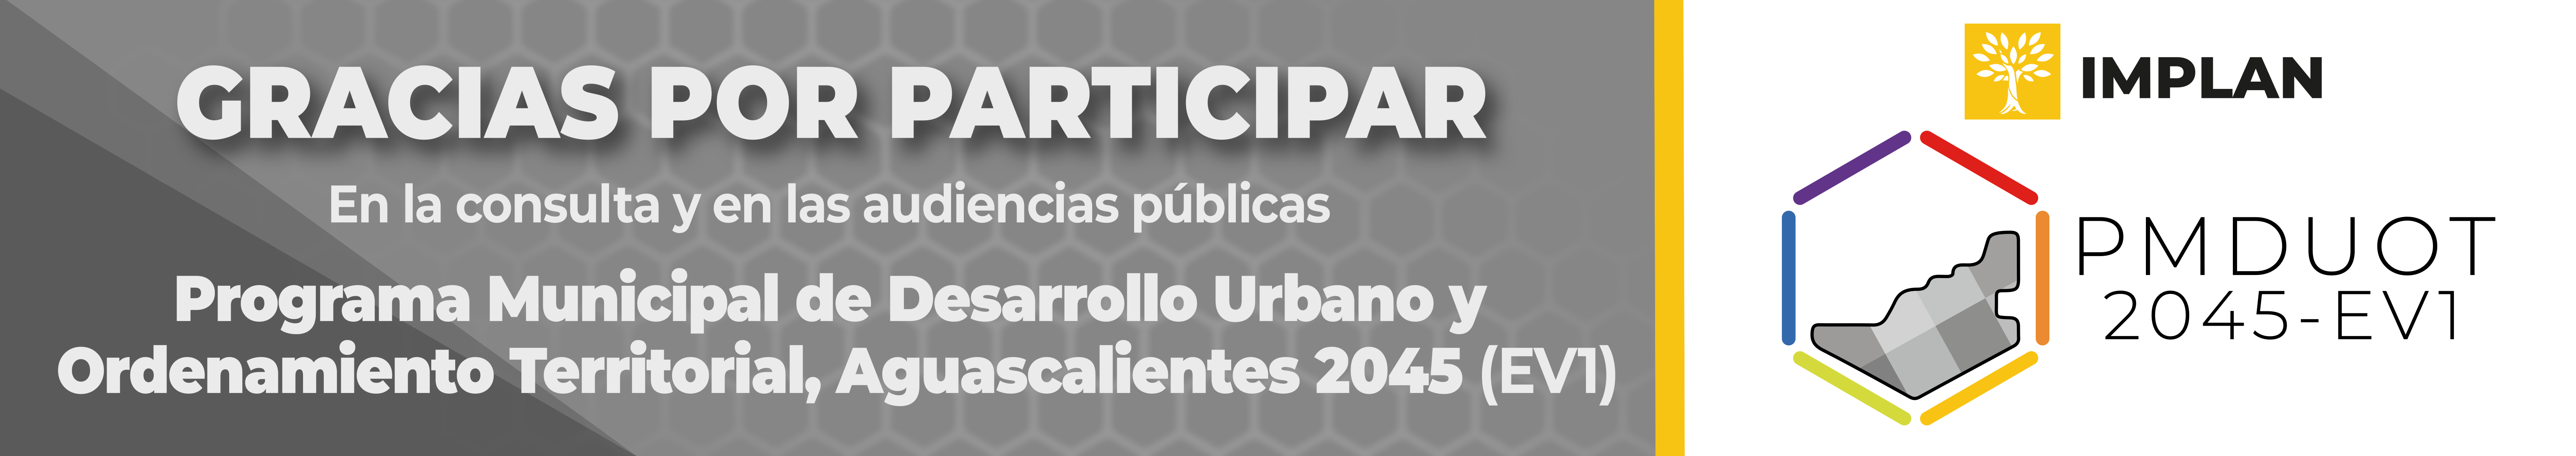 Programa Municipal de Desarrollo Urbano y Ordenamiento Territorial de Aguascalientes 2045